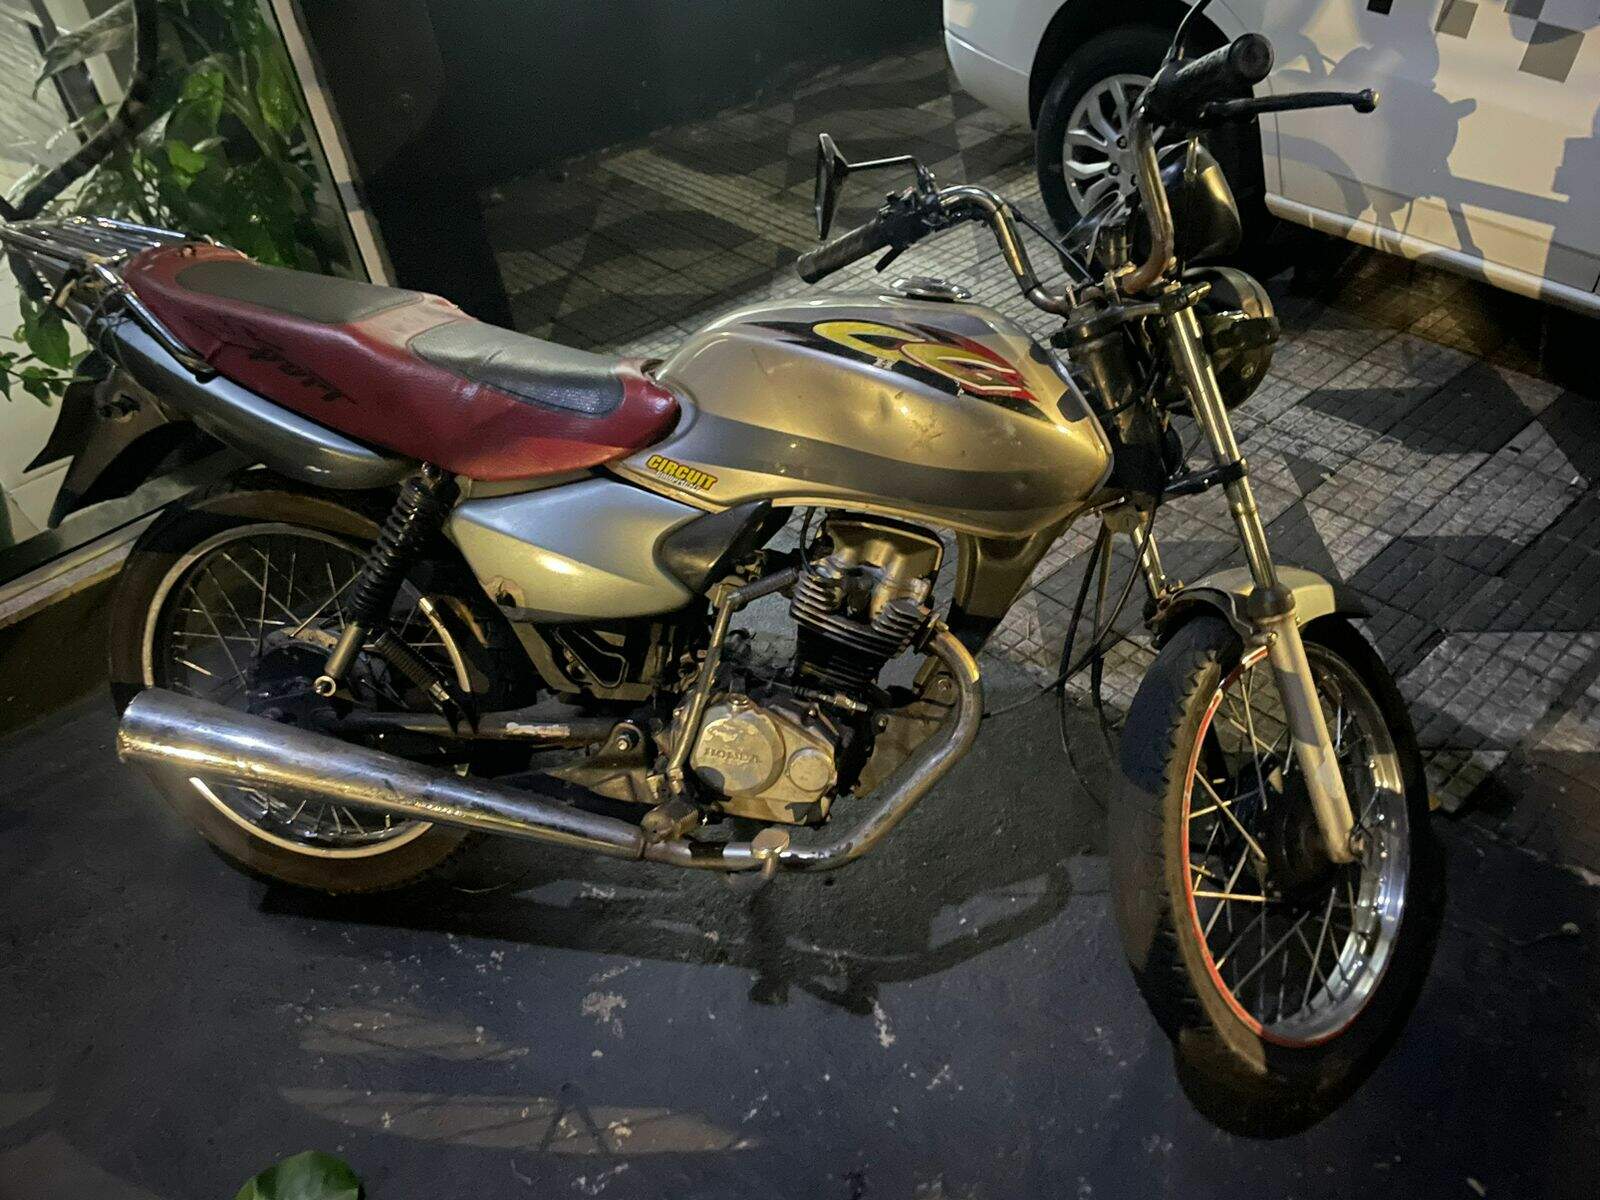 Motocicleta usada nos roubos foi apreendida. Foto: Polícia Militar/Divulgação